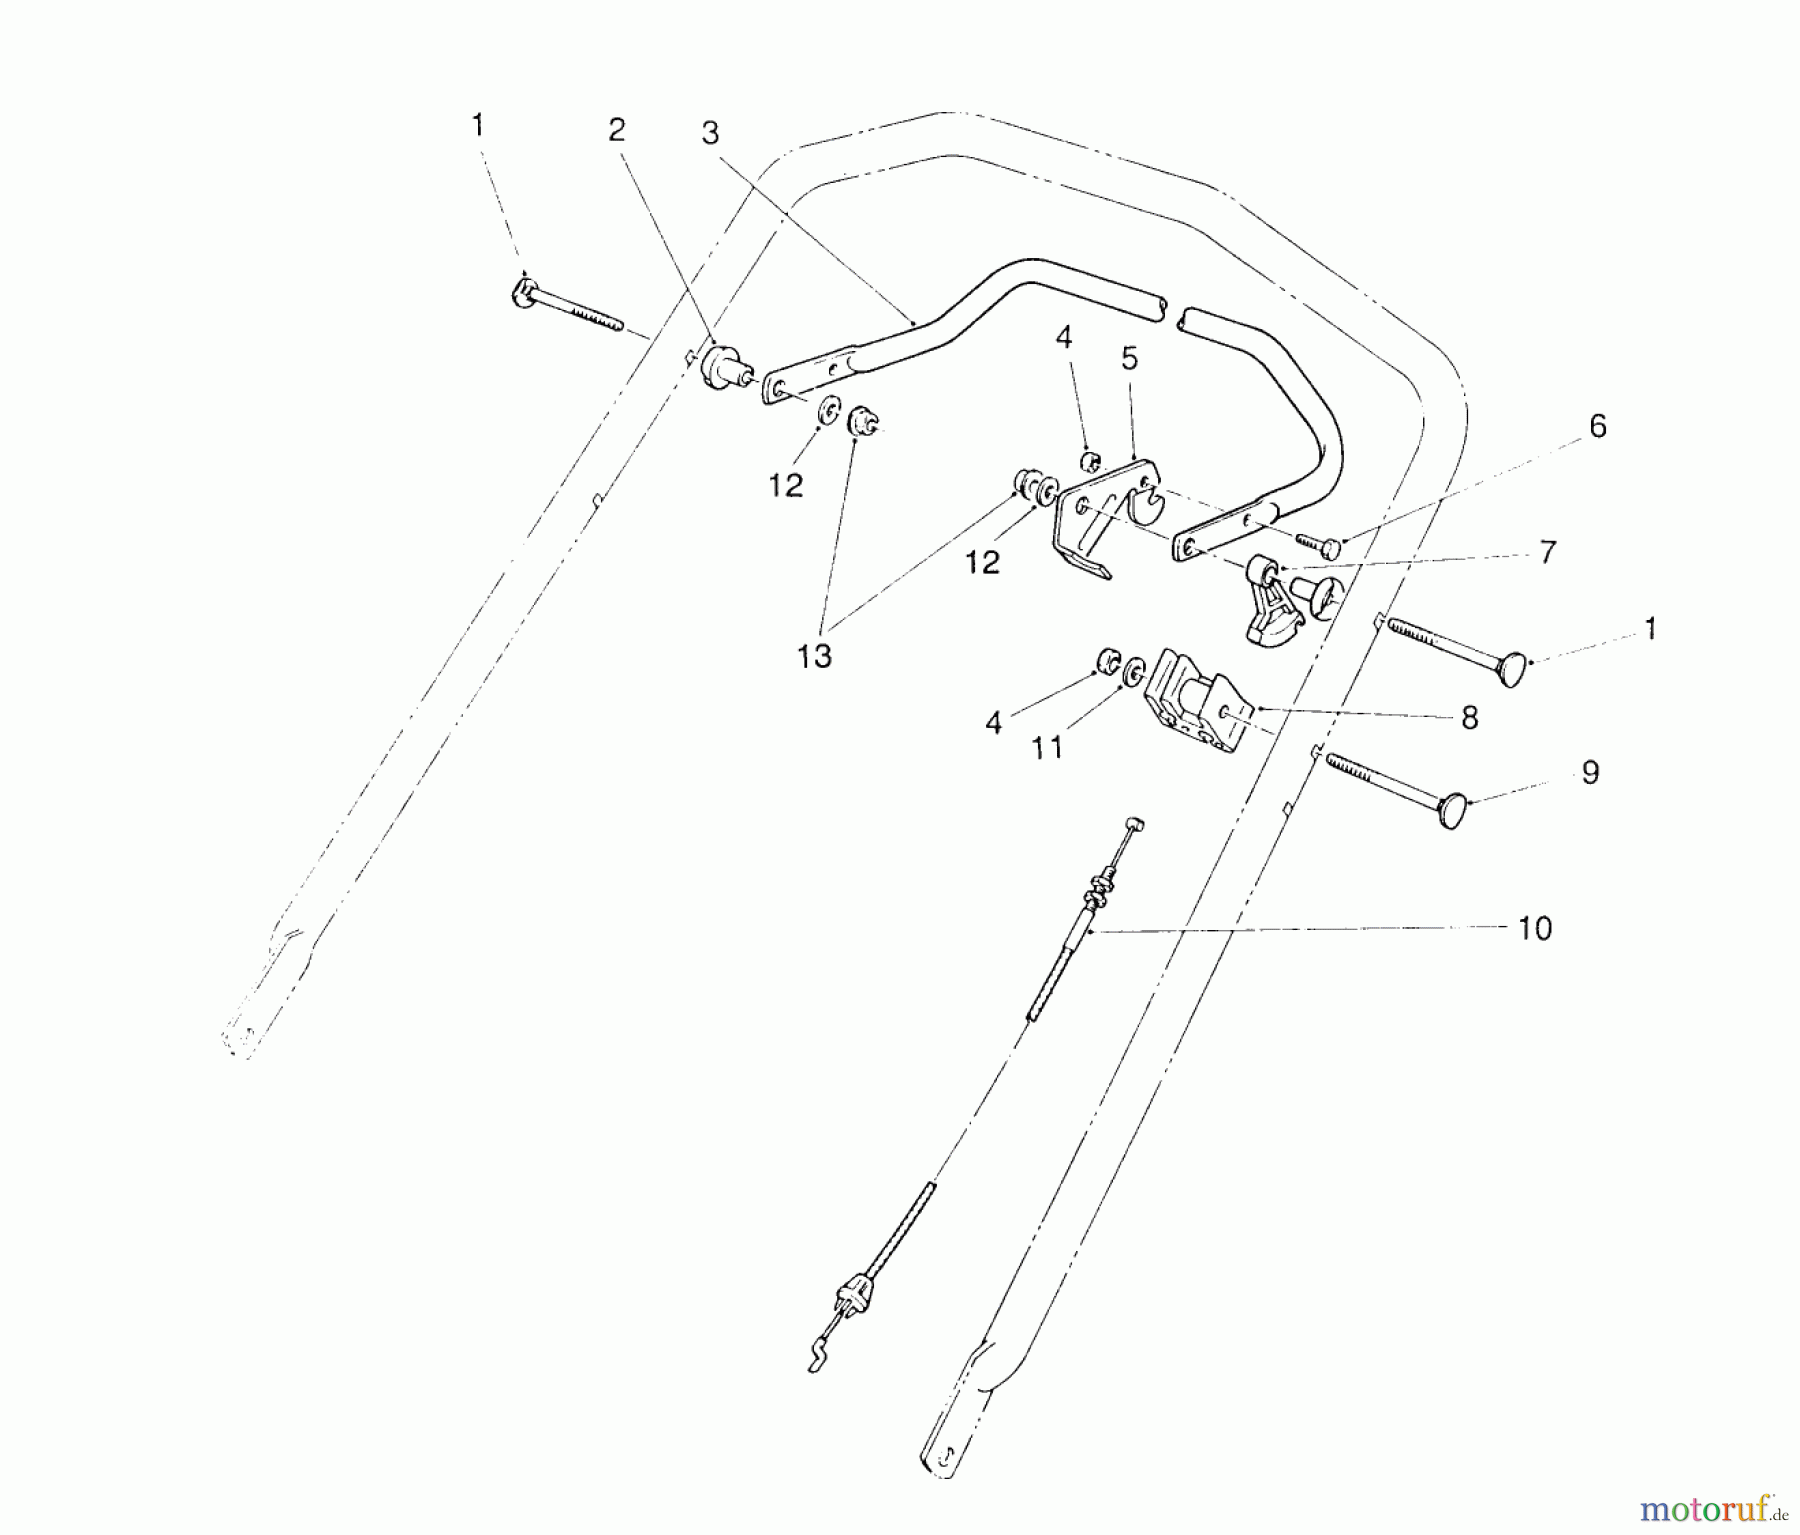  Toro Neu Mowers, Walk-Behind Seite 2 26625BG - Toro Lawnmower, 1990 (0000001-0999999) TRACTION CONTROL ASSEMBLY